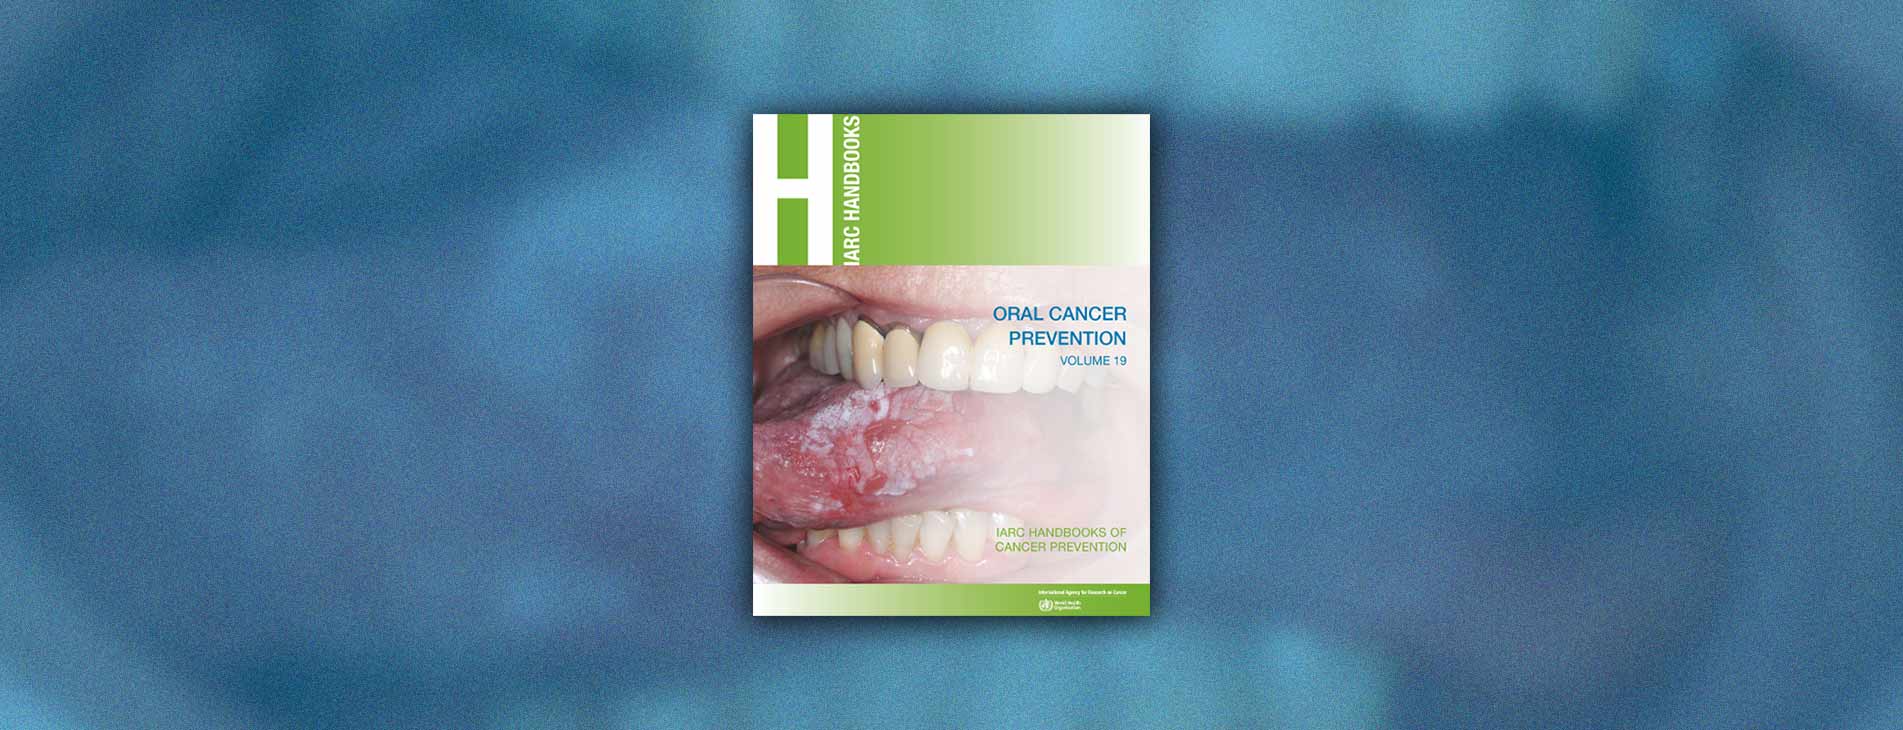 Profilaktyka raka jamy ustnej – IARC